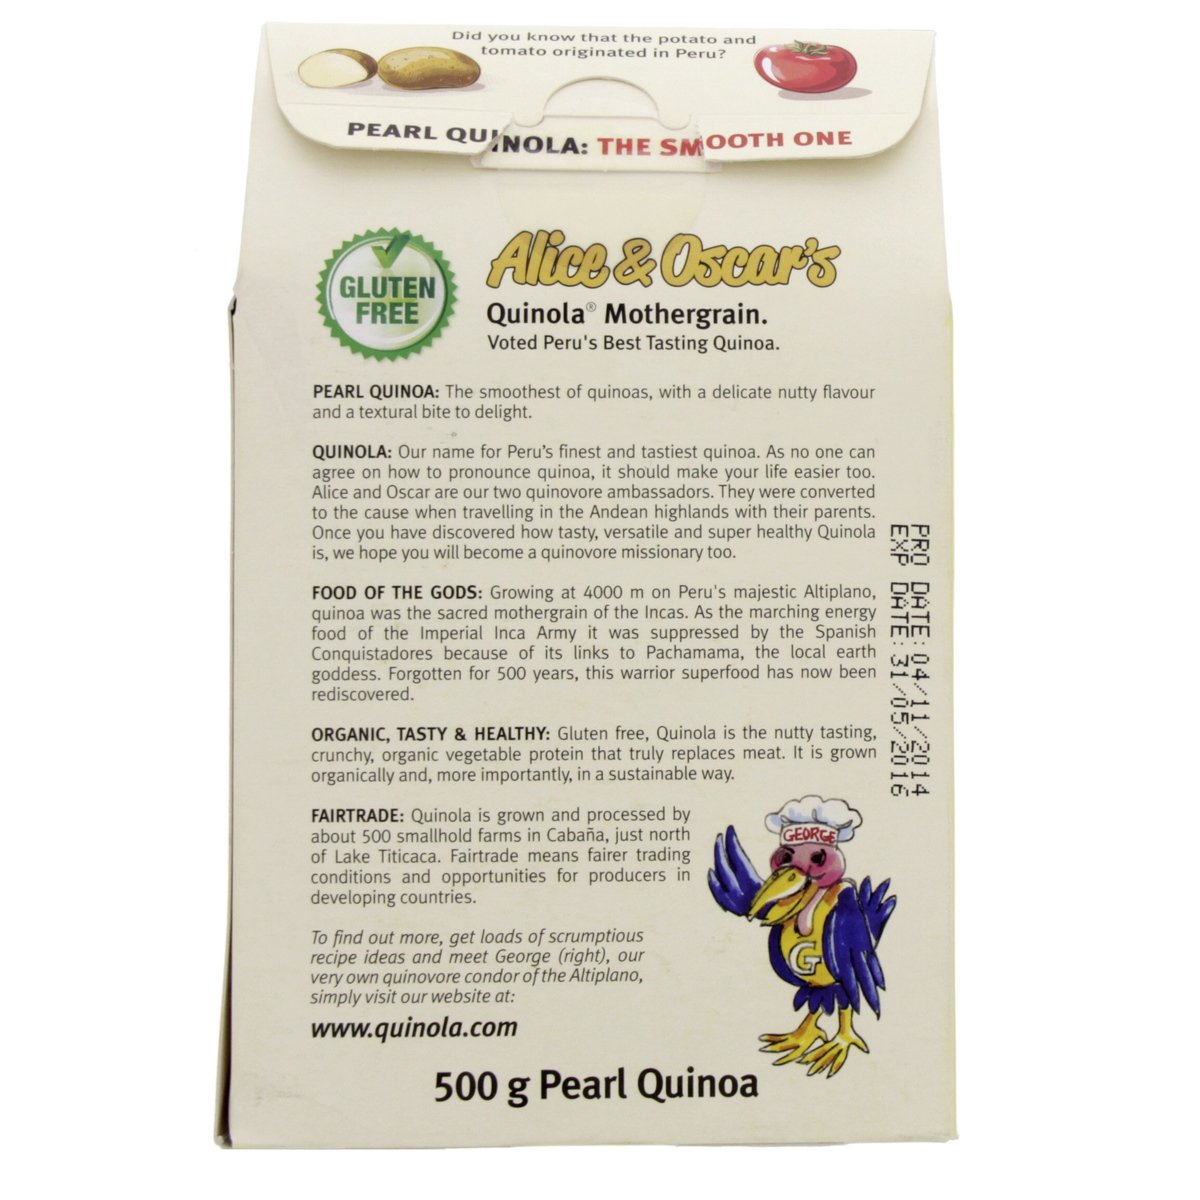 Alice & Oscar's Organic Pearl Quinoa 500 g